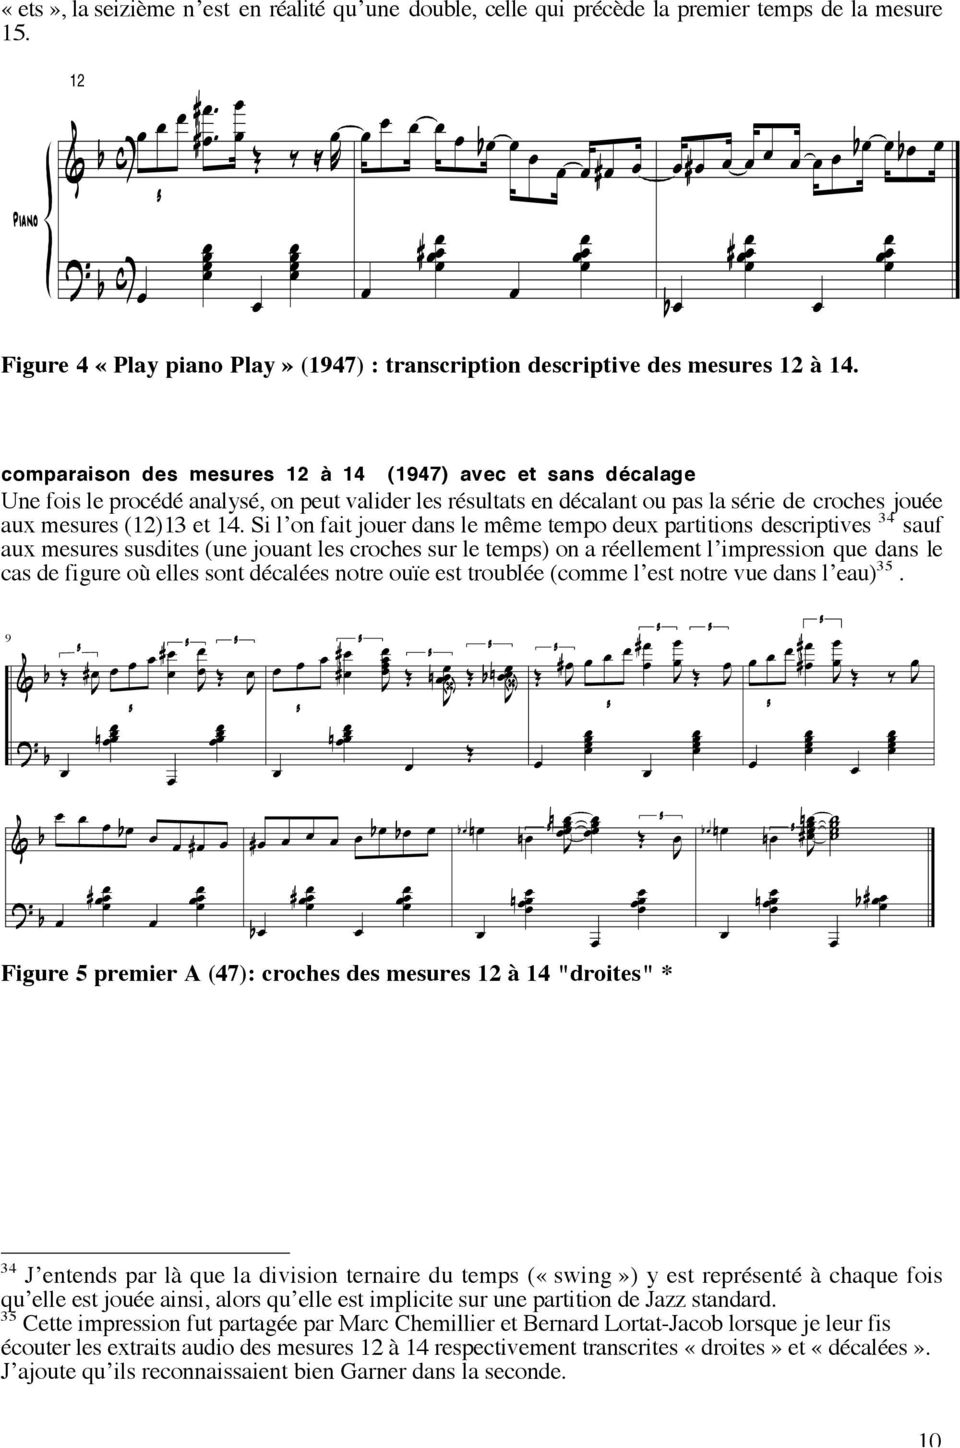 Piano "Play piano play" (1947) - premier A comparaison des mesures 12 à 14 (1947) avec Erroll et Garner sans décalage Une fois le procédé analysé, on peut valider les résultats en décalant ou pas la